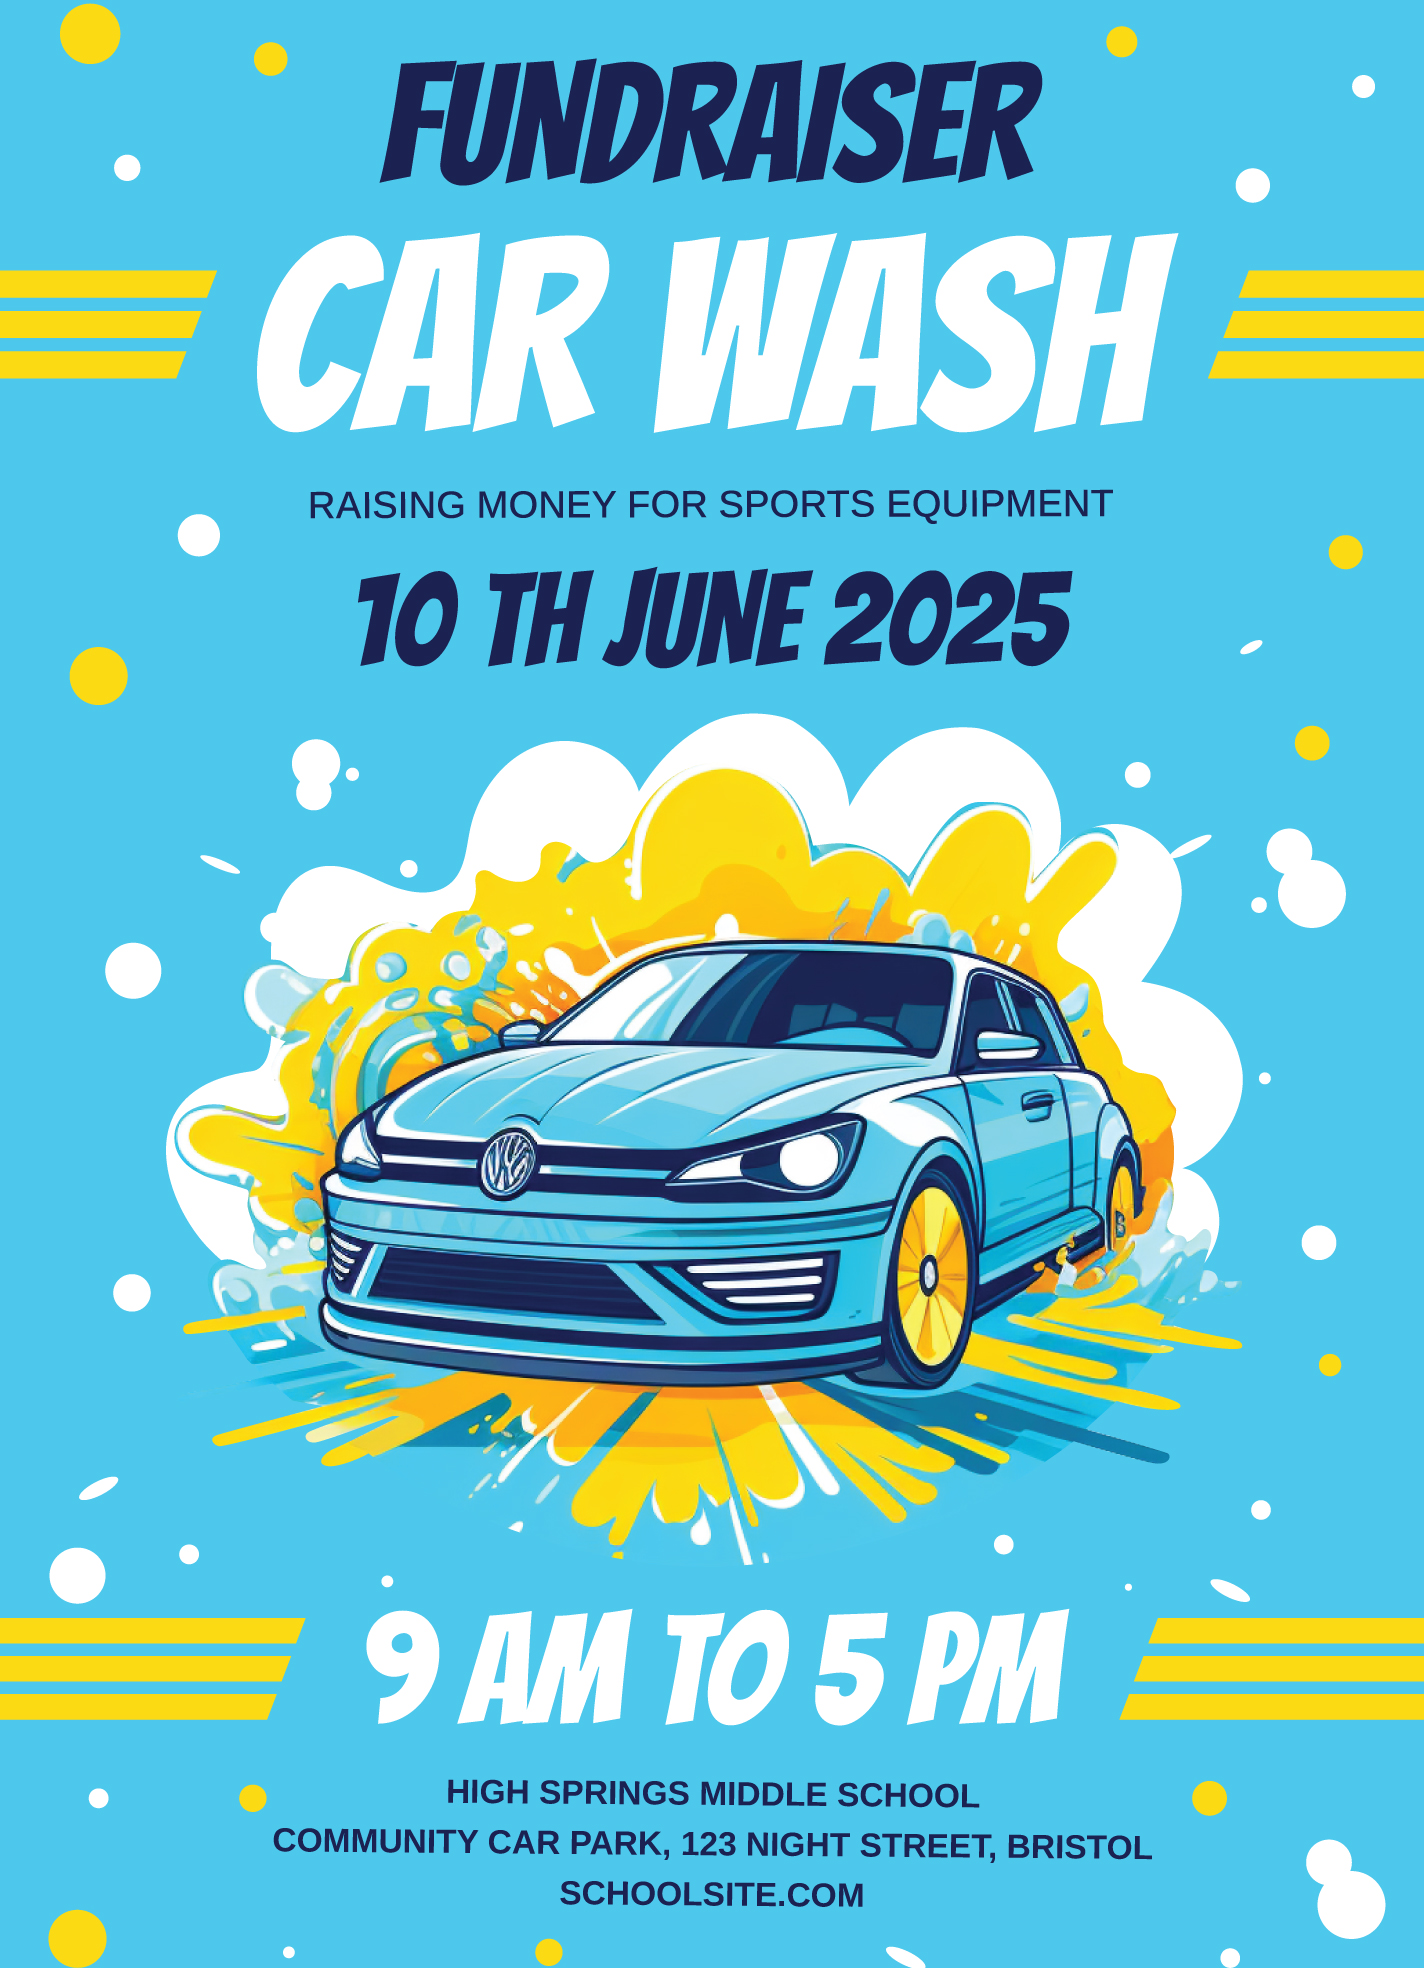 Doc's Carwash – Car Wash